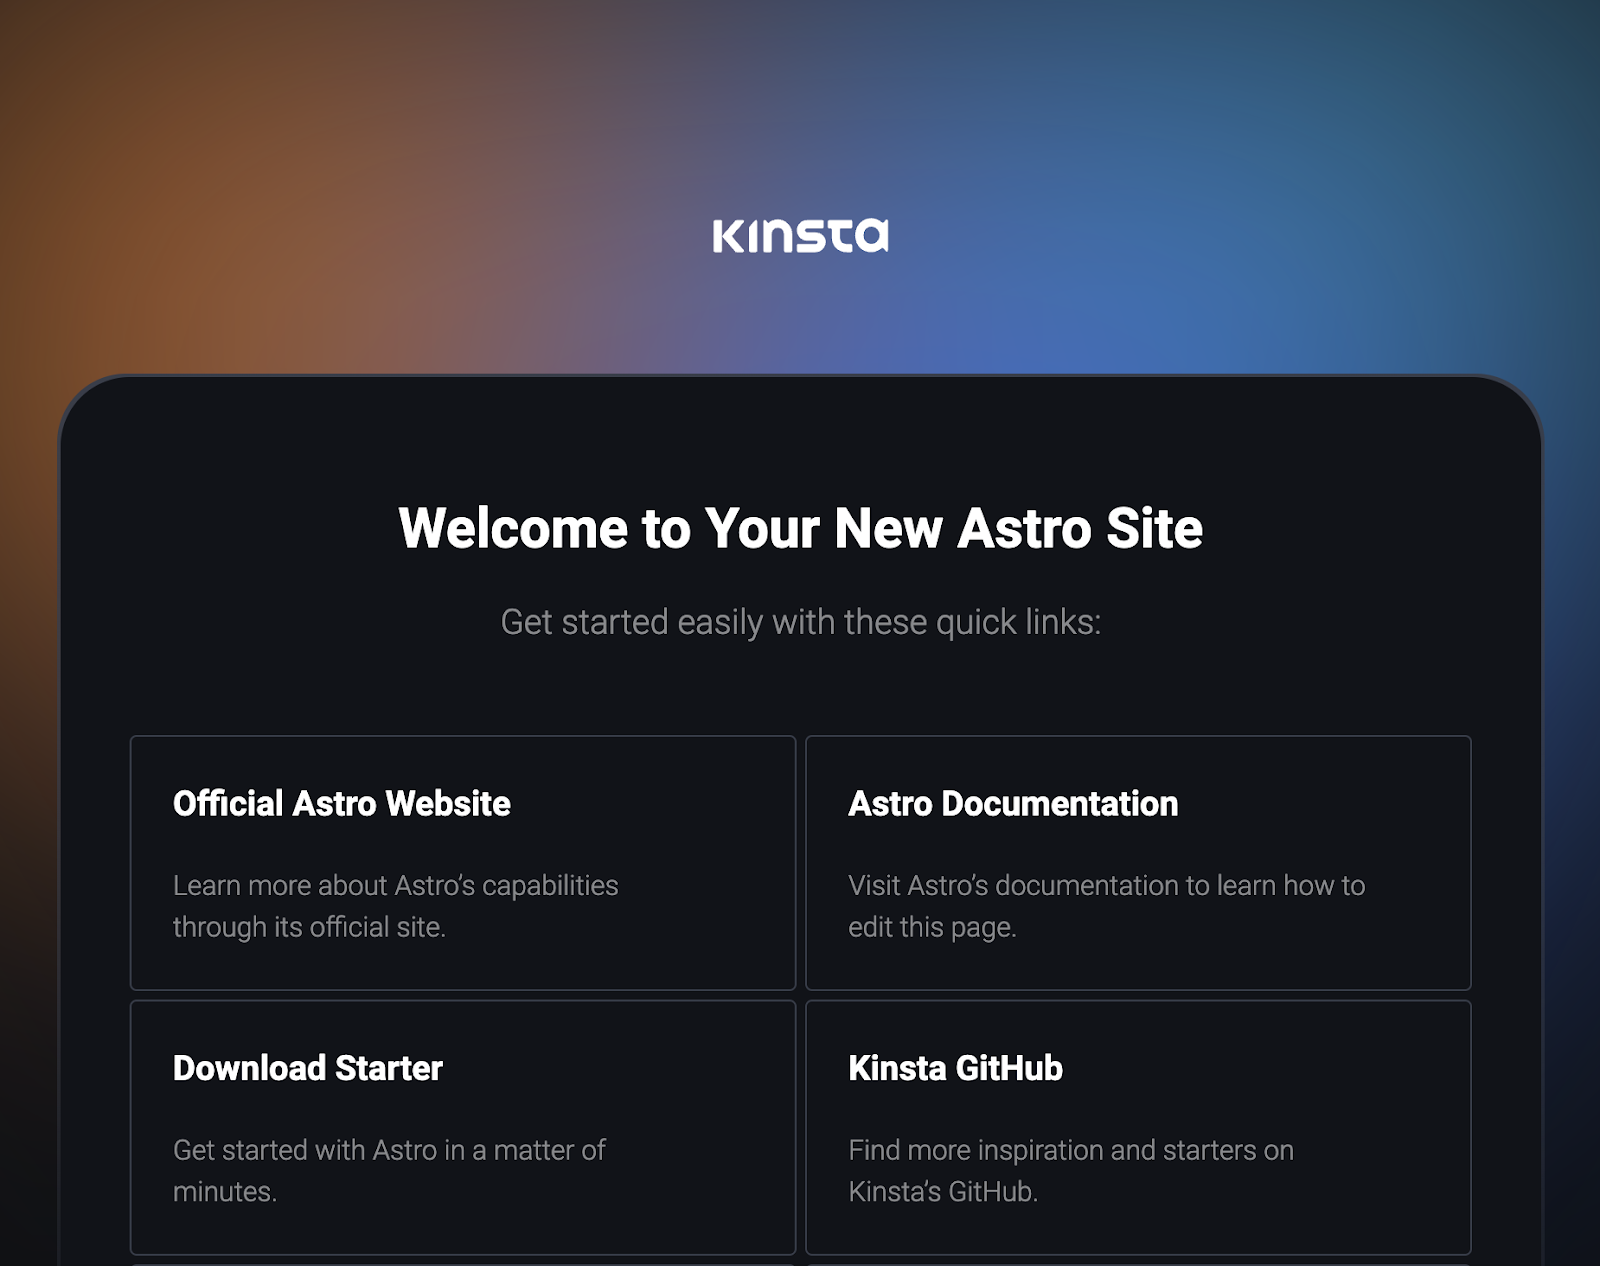 Una pagina scura con il logo Kinsta in bianco al centro sopra la scritta "Welcome to Your New Astro Site", seguita da due file di schede con le etichette "Official Astro Website", "Astro Documentation", "Download Starter" e "Kinsta GitHub".